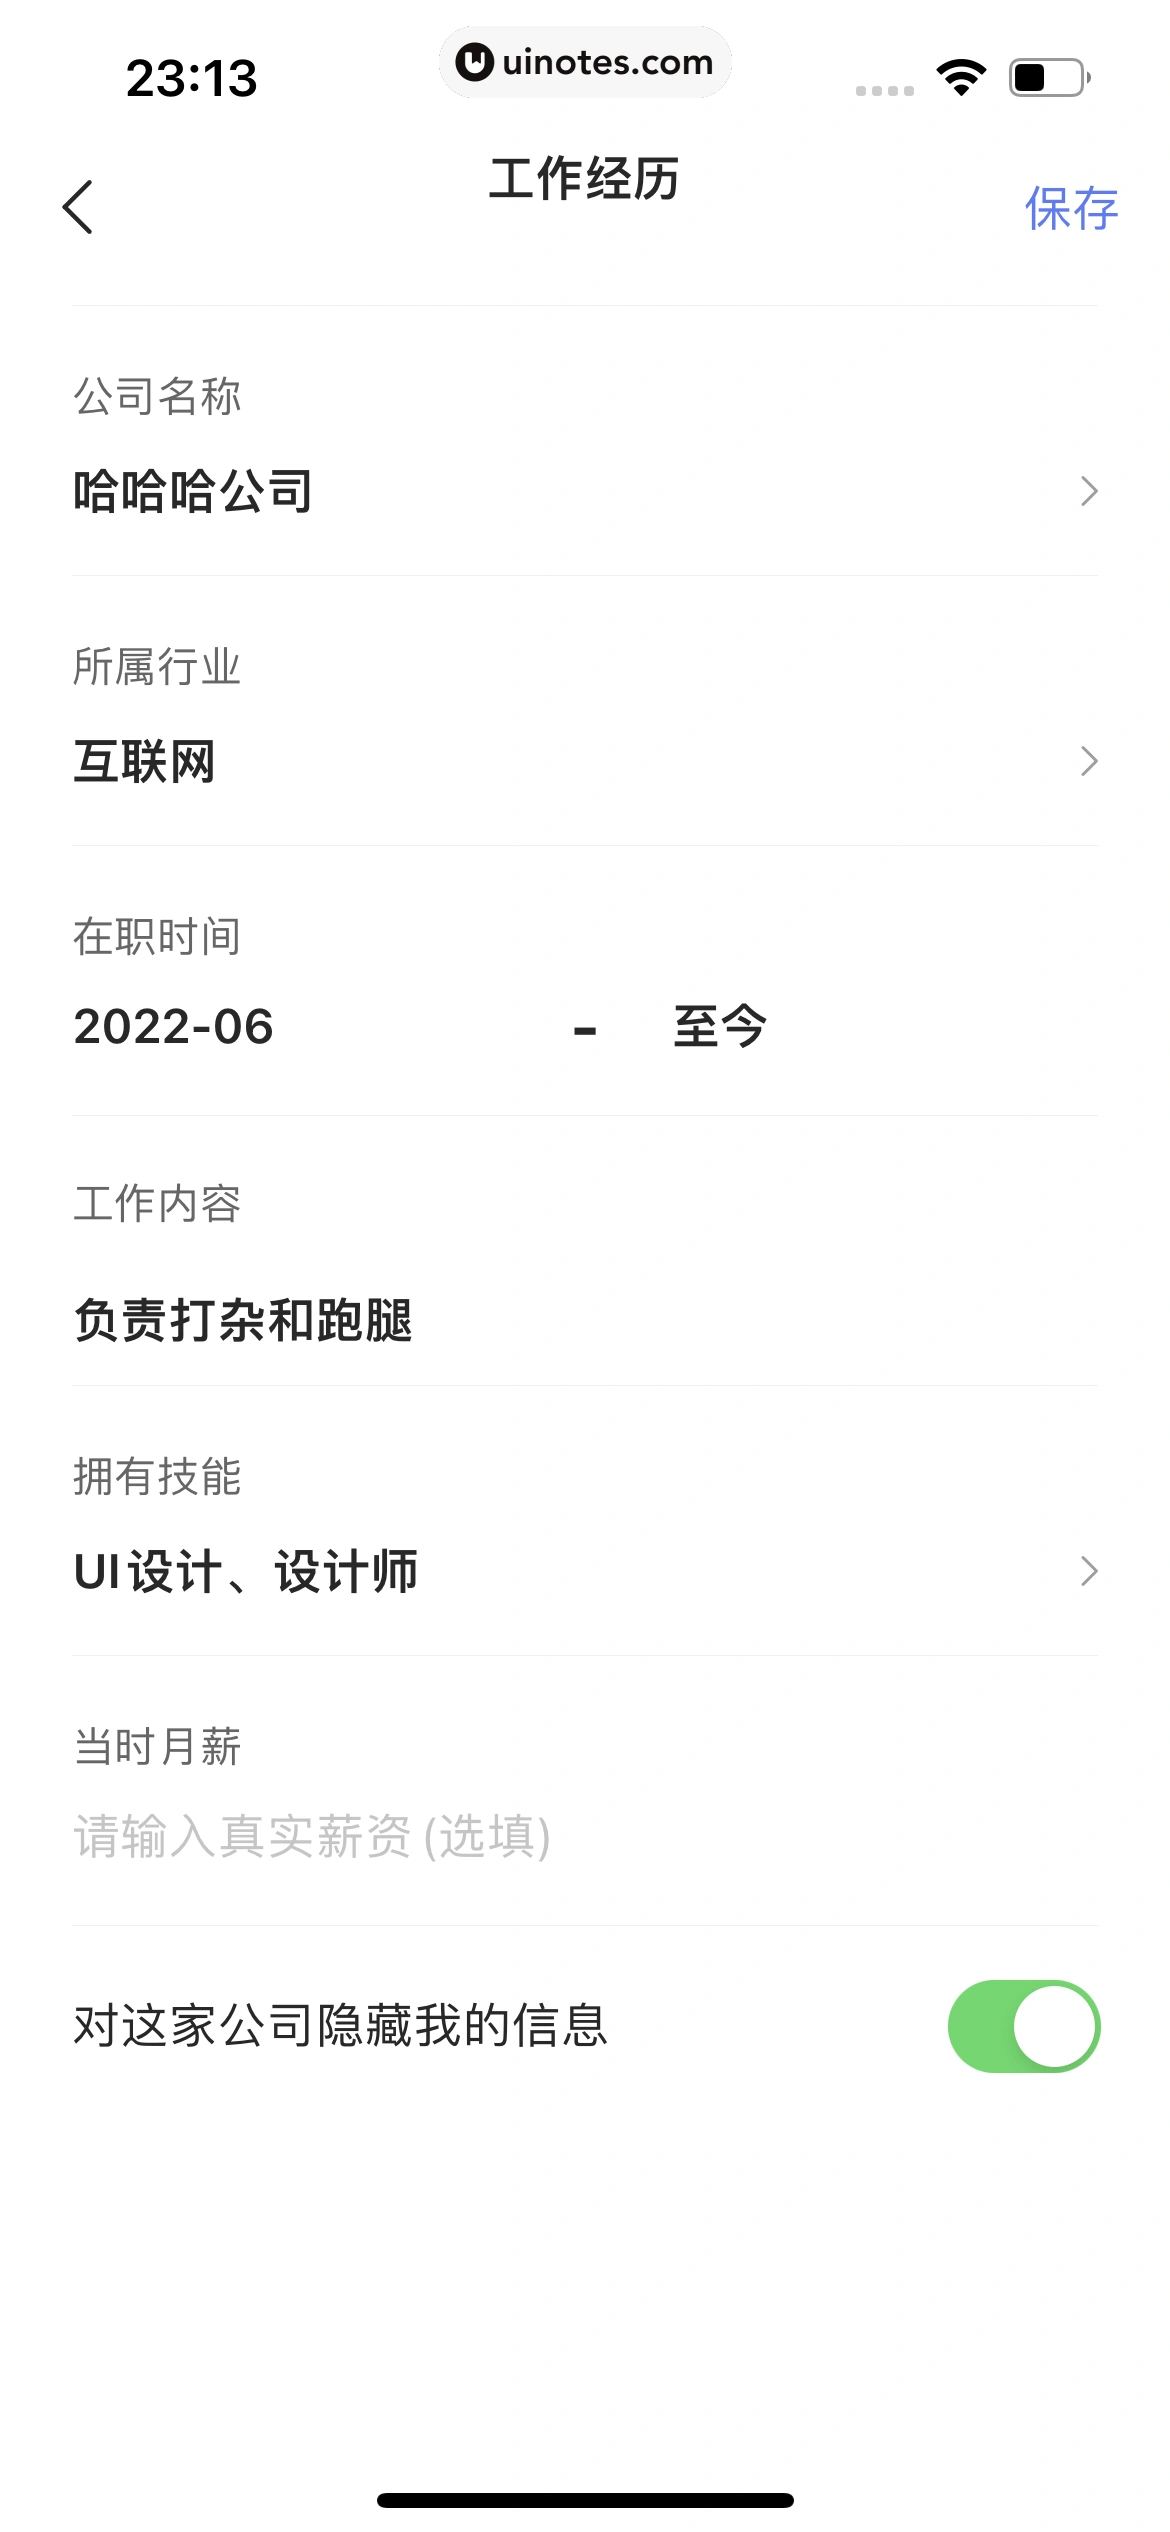 智联招聘 App 截图 513 - UI Notes